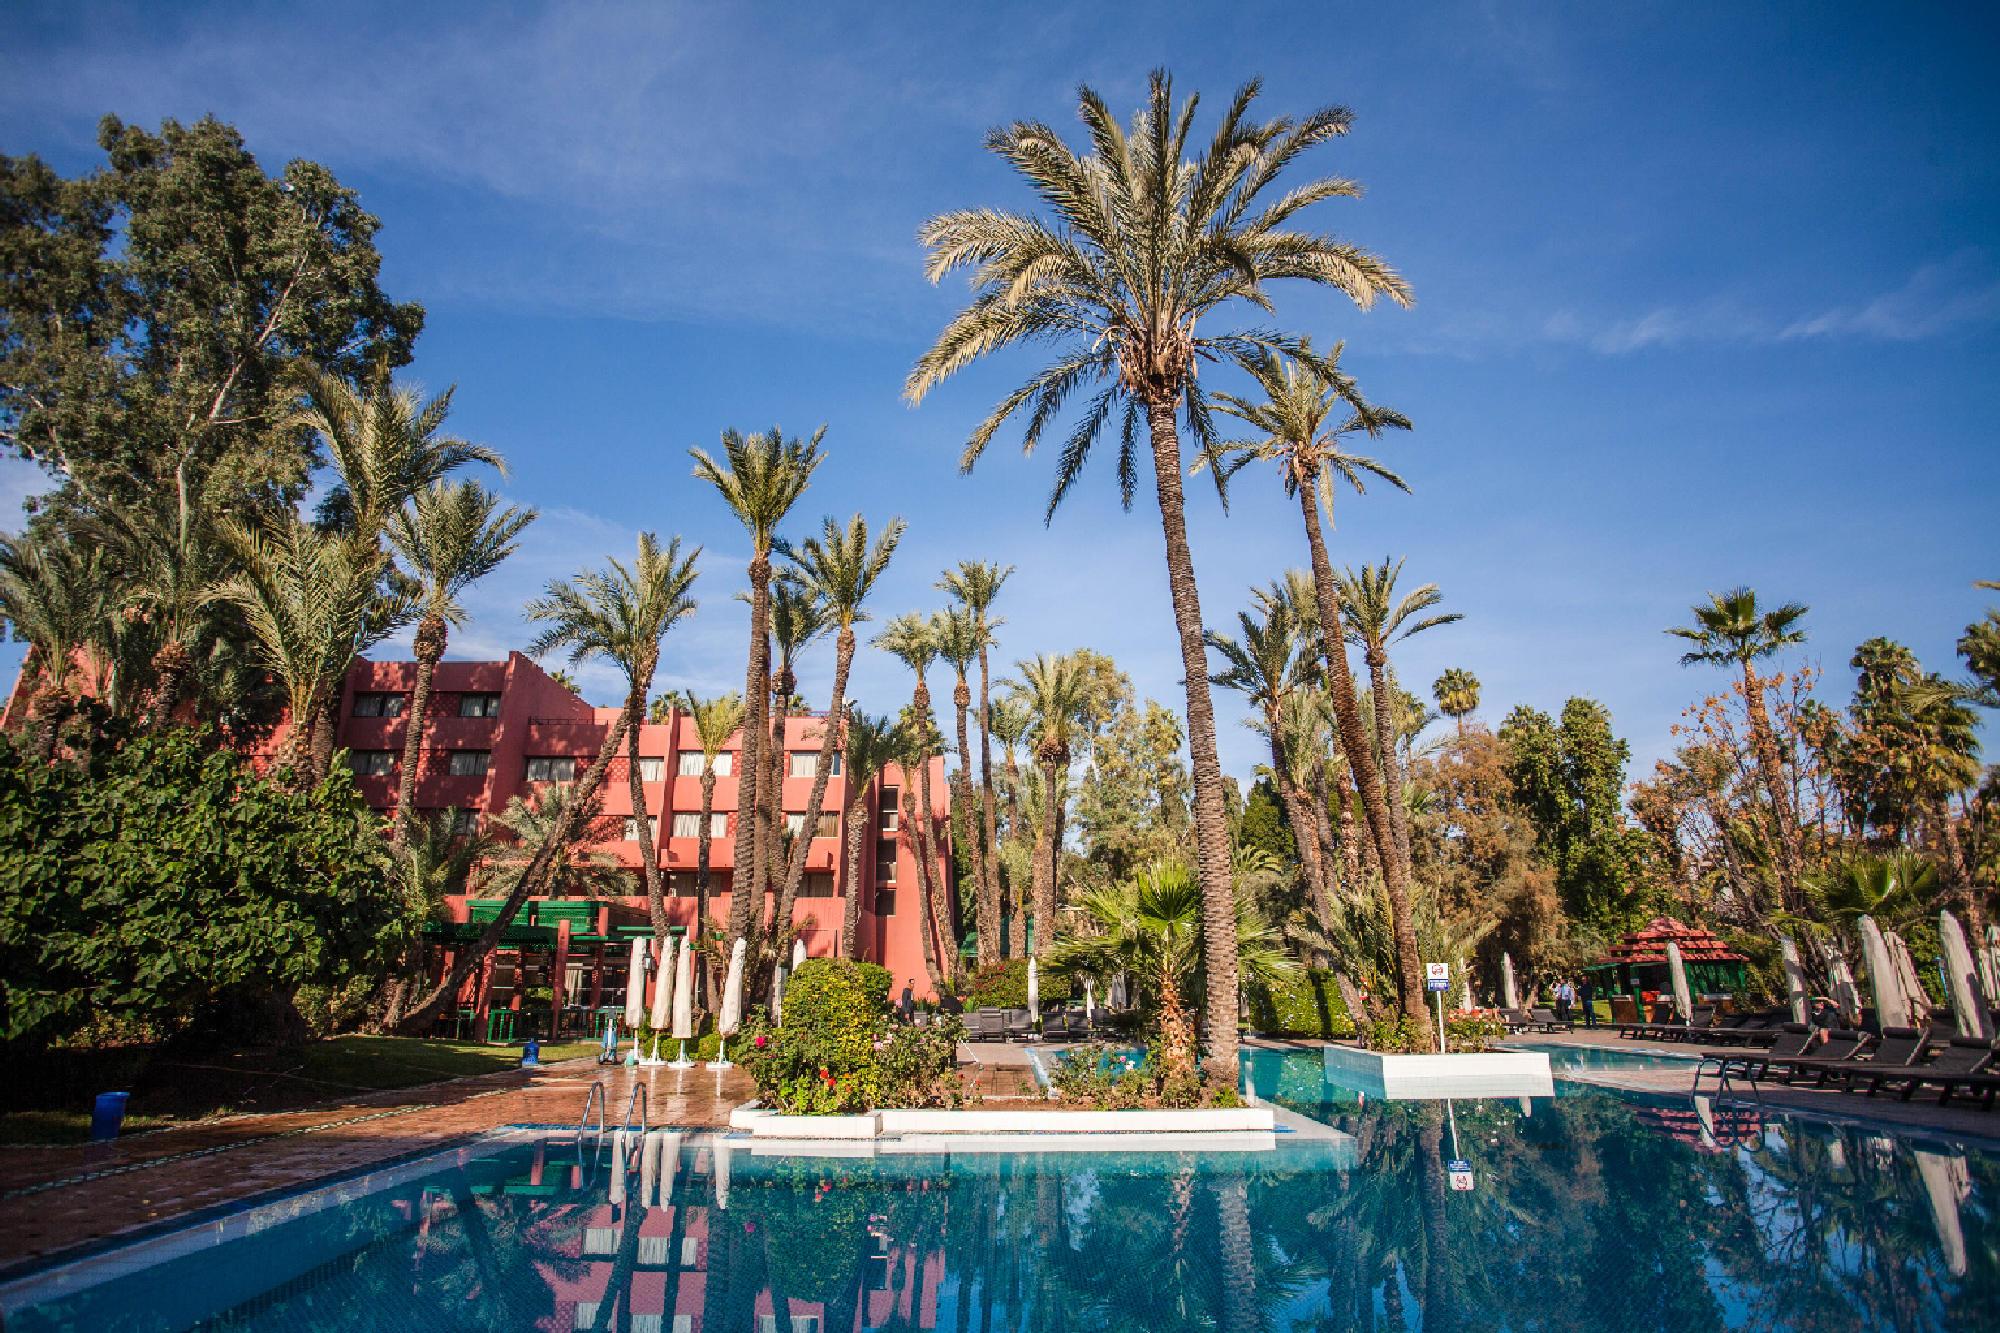 View Hotel Kenzi Farah's scenic main pool in impressive Morocco.